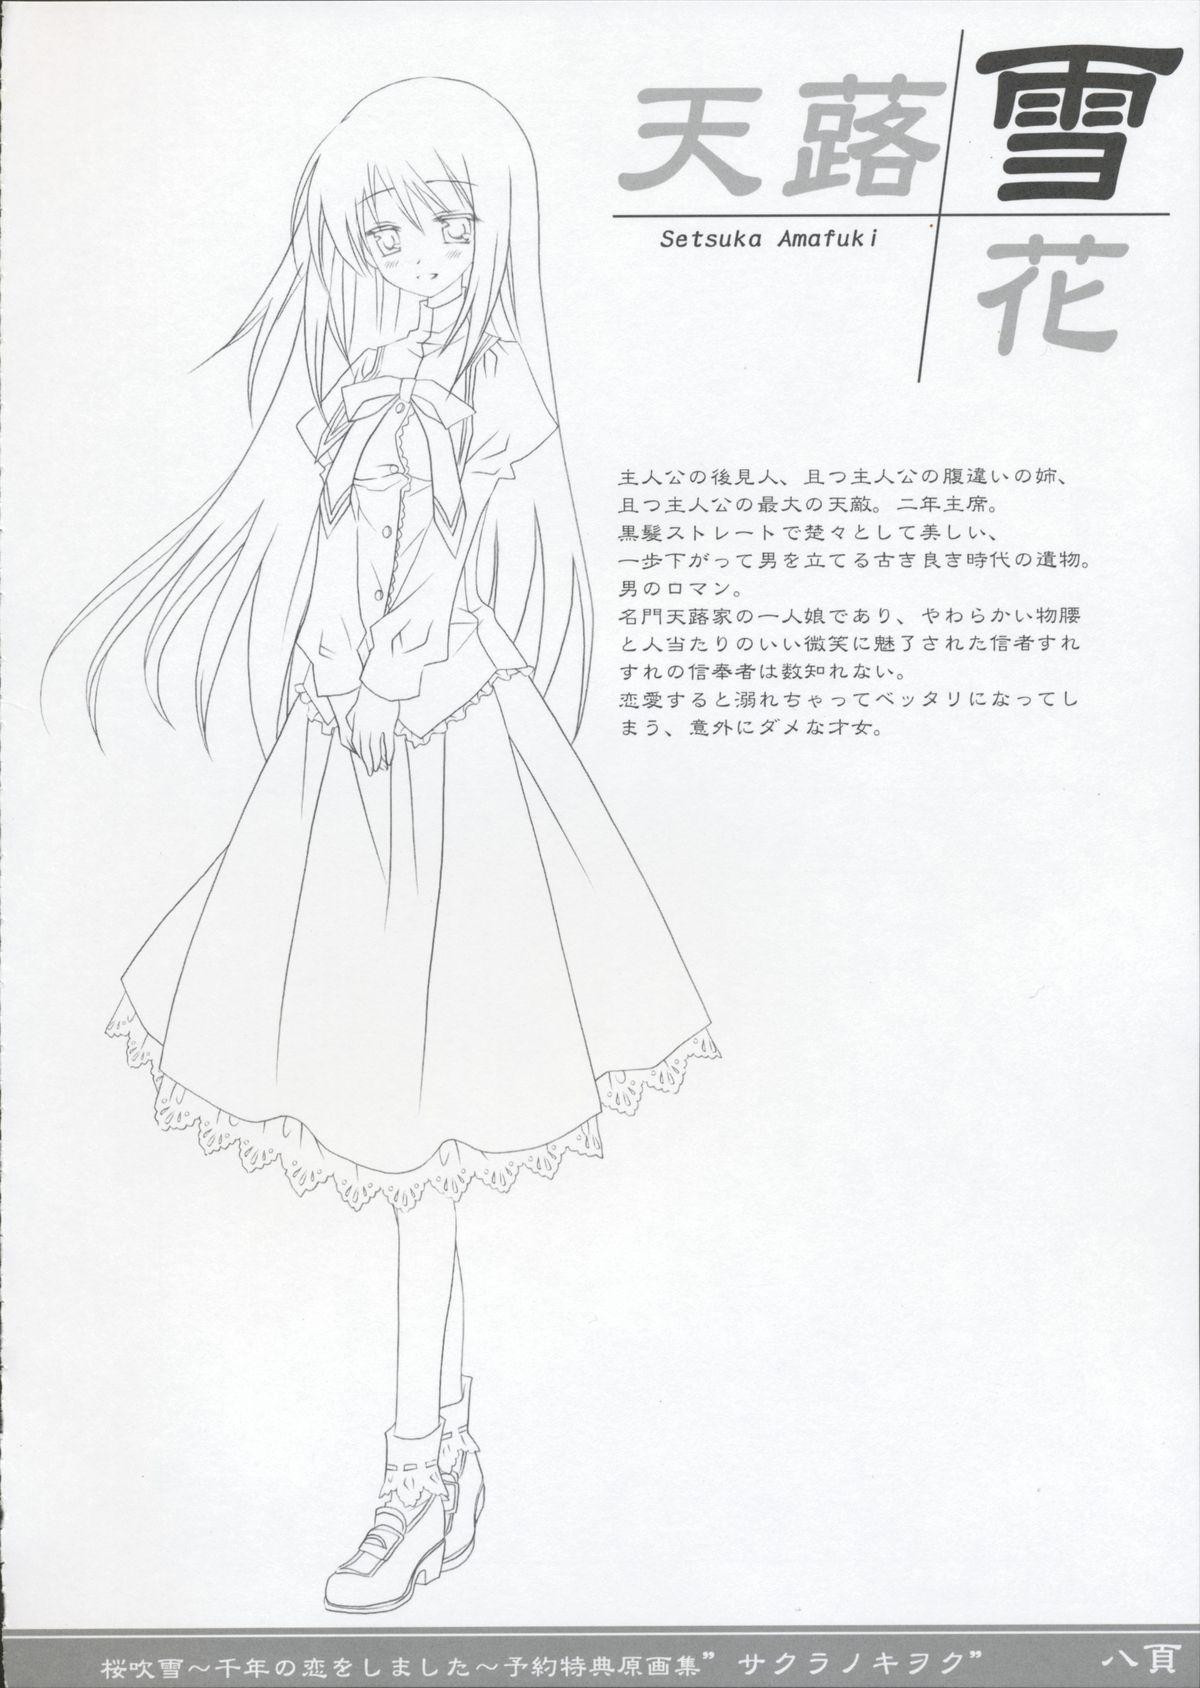 Costume [Silver Bullet] Sakura Fubuki ~Sennen no Koi wo Shimashita~ Yoyaku Tokuten Genga-shuu Backshots - Page 7